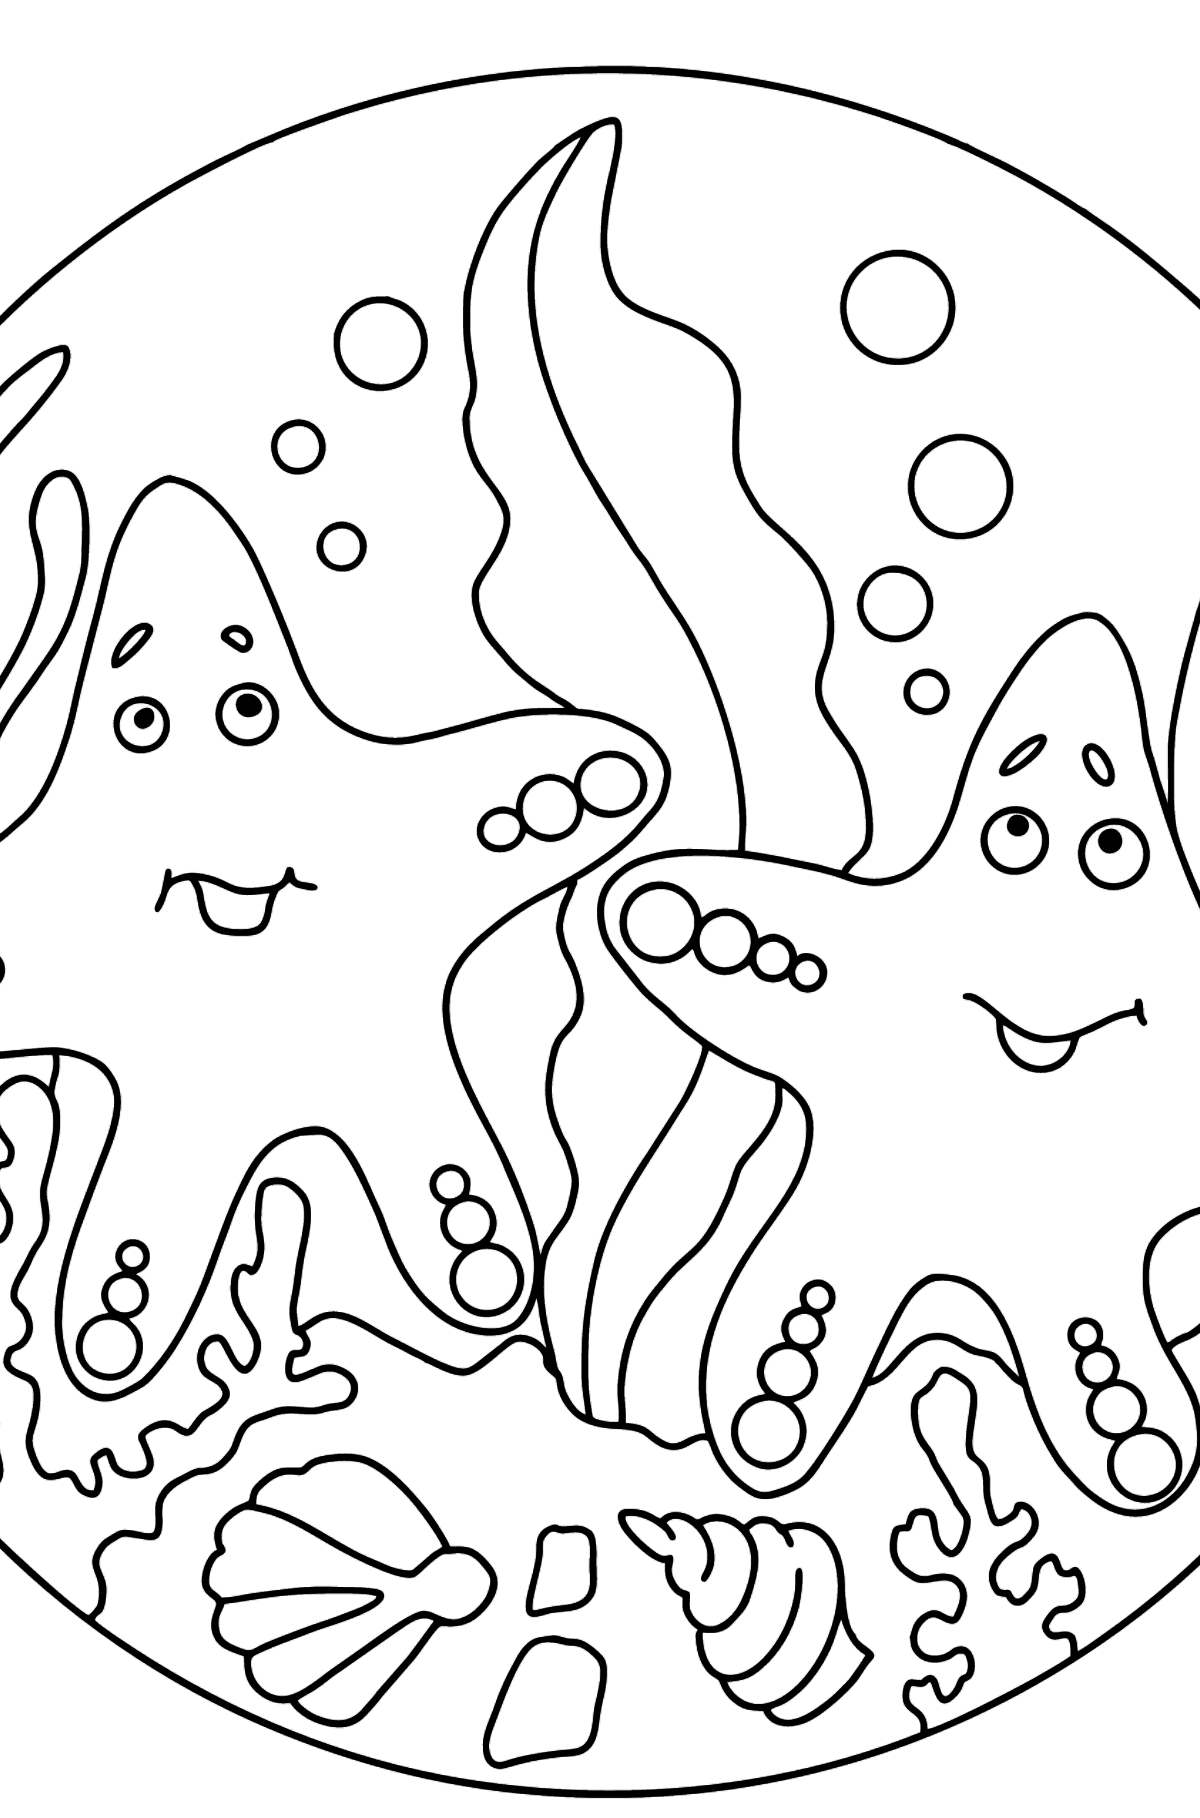 Раскраска экзотические животные - две морские звезды - Картинки для Детей